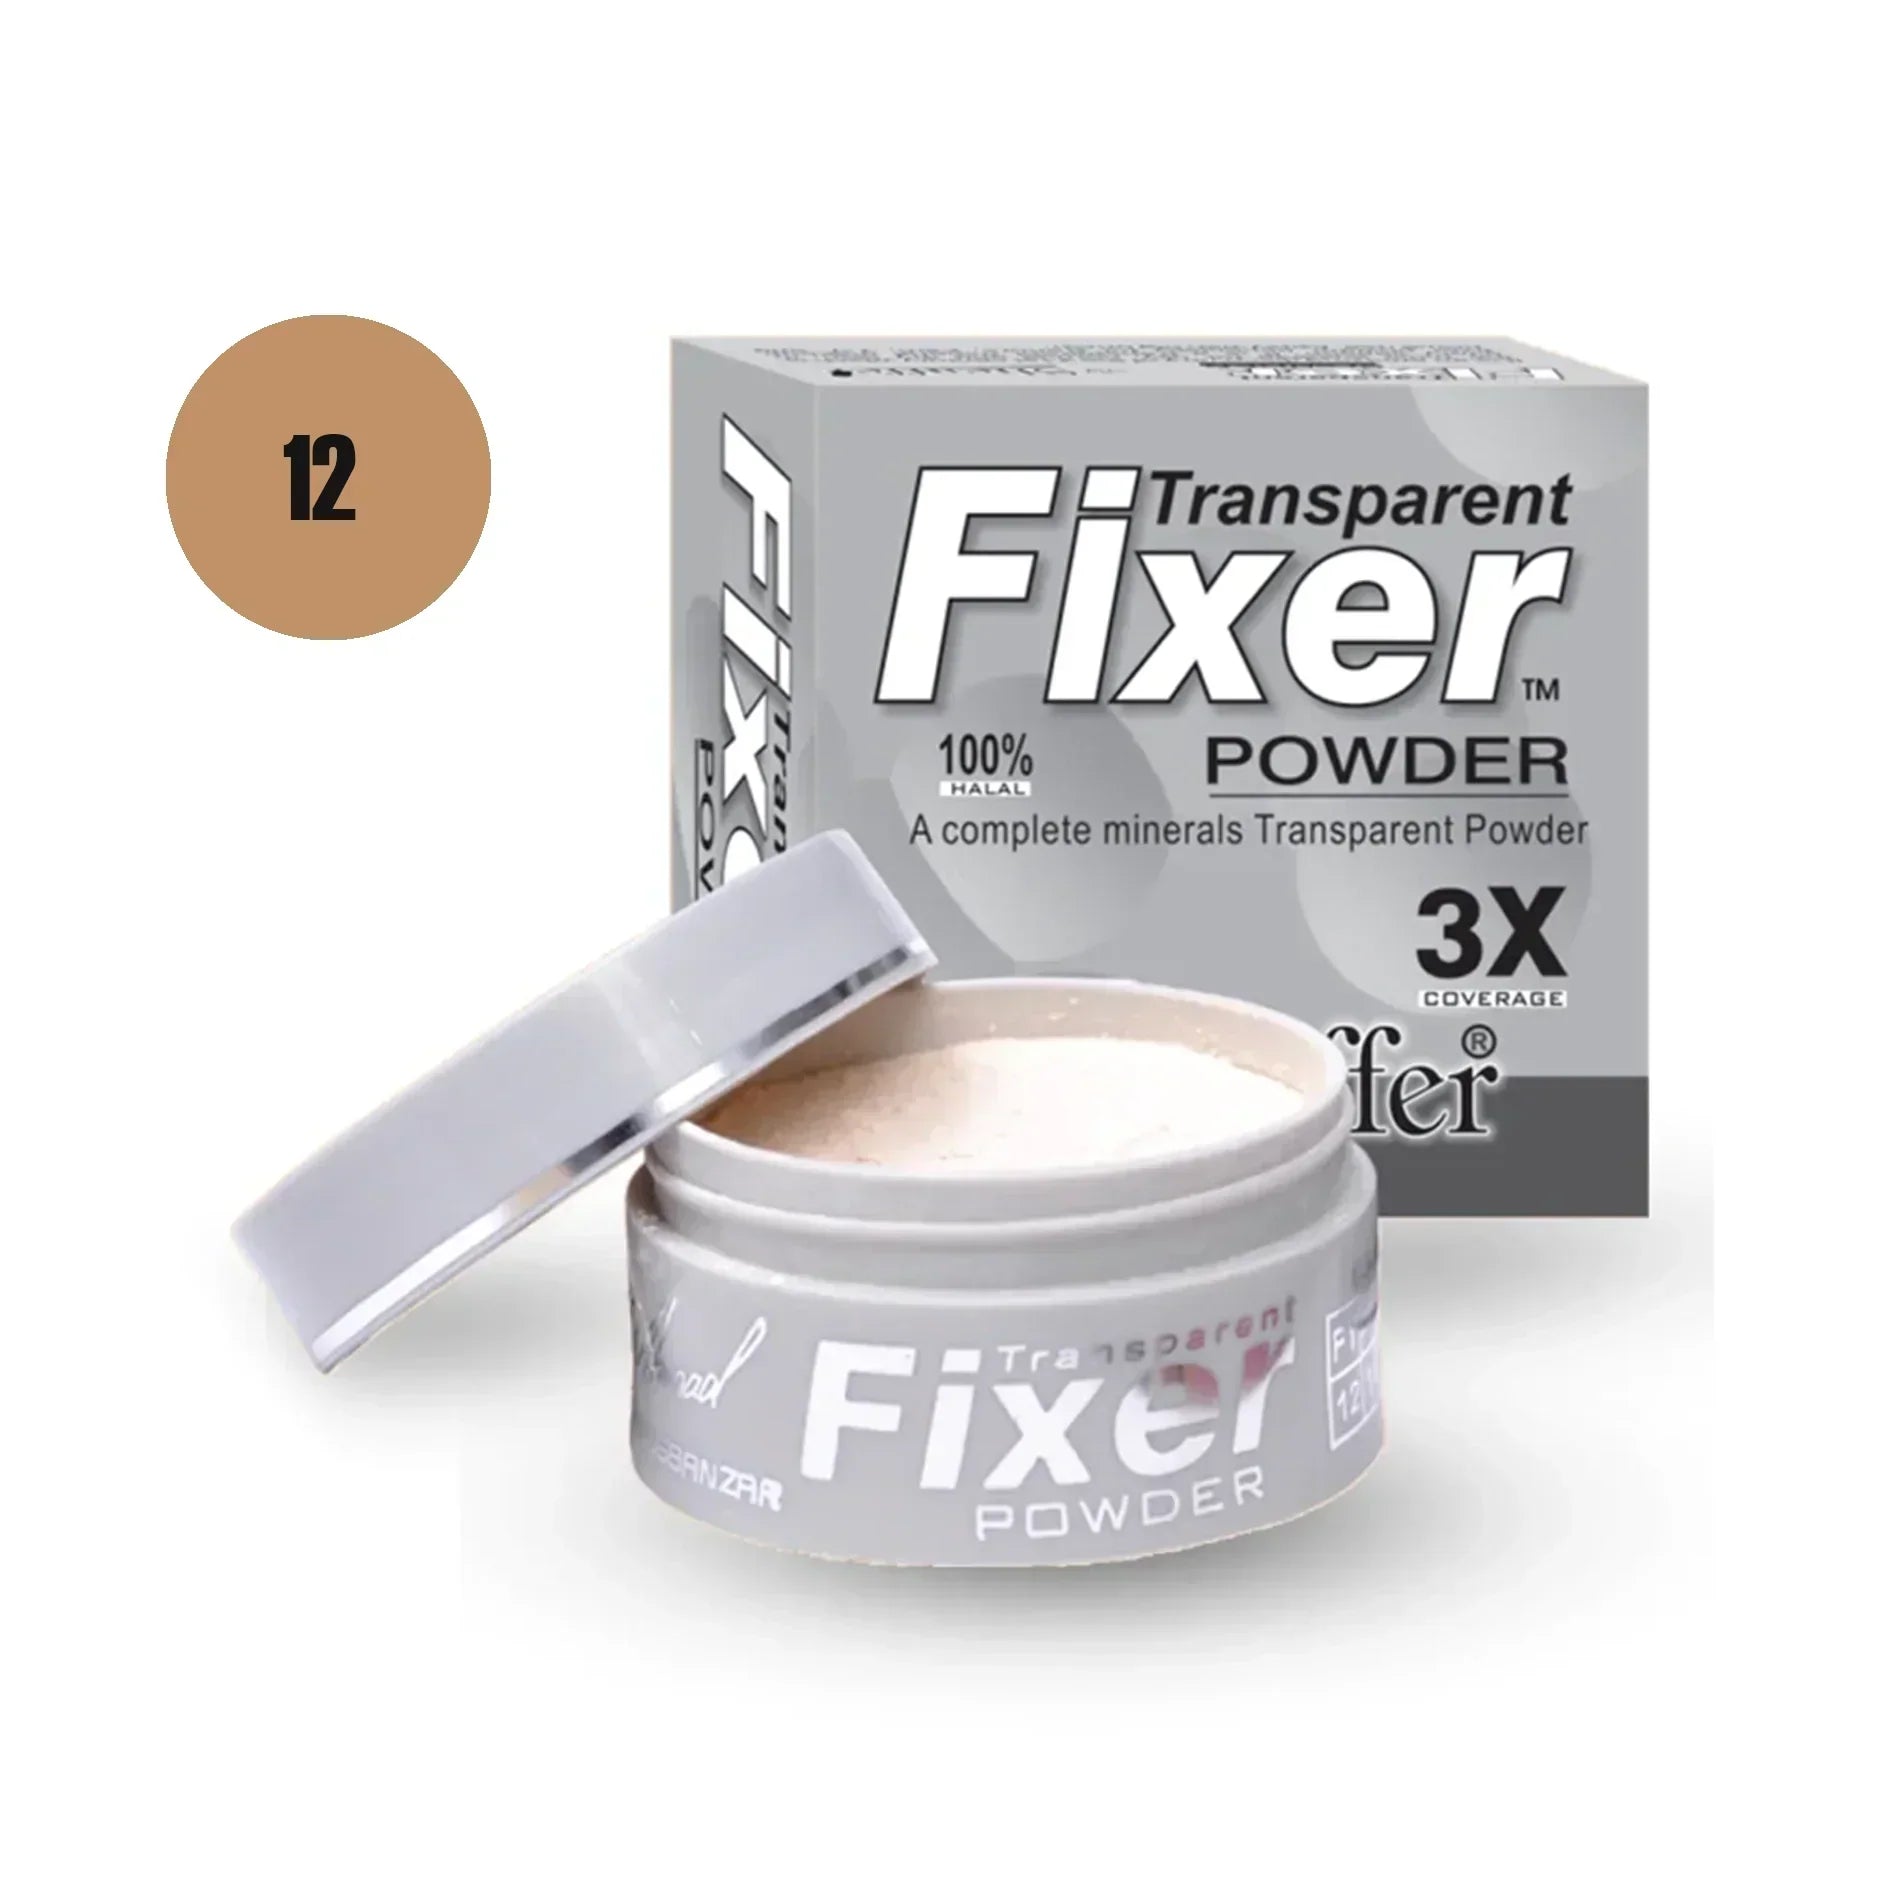 Sheaffer Transparent Fixer Powder Shade No 12 - Retailershop - Online Shopping Center